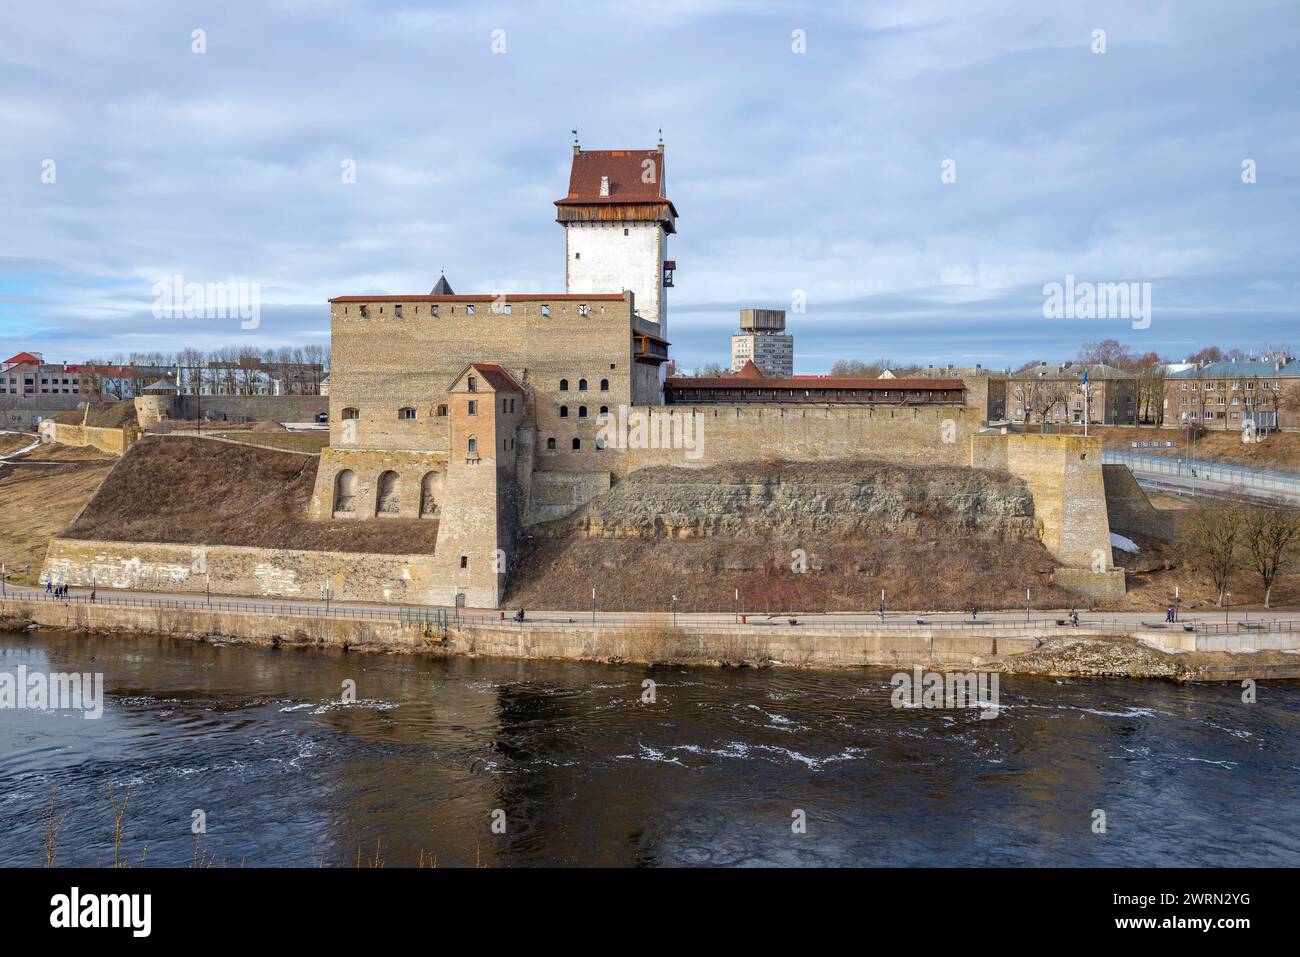 L'ancien château d'Herman sur la rive de la rivière. Narva, Estonie Banque D'Images